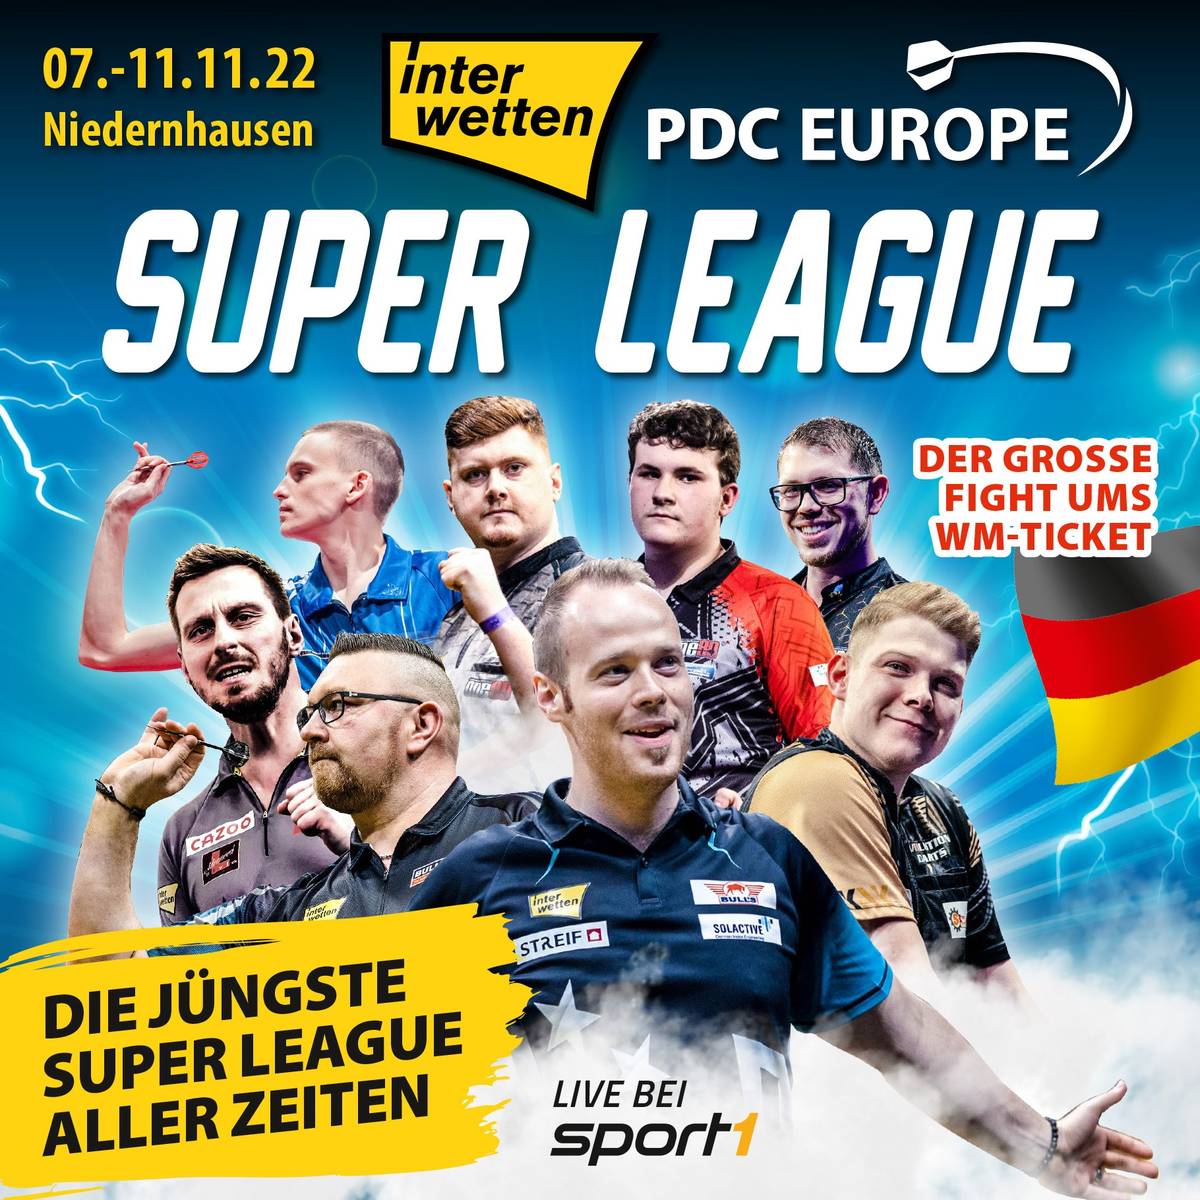 Darts-WM Deutsche Qualifikation mit Hopp, Kurz LIVE im TV auf SPORT1